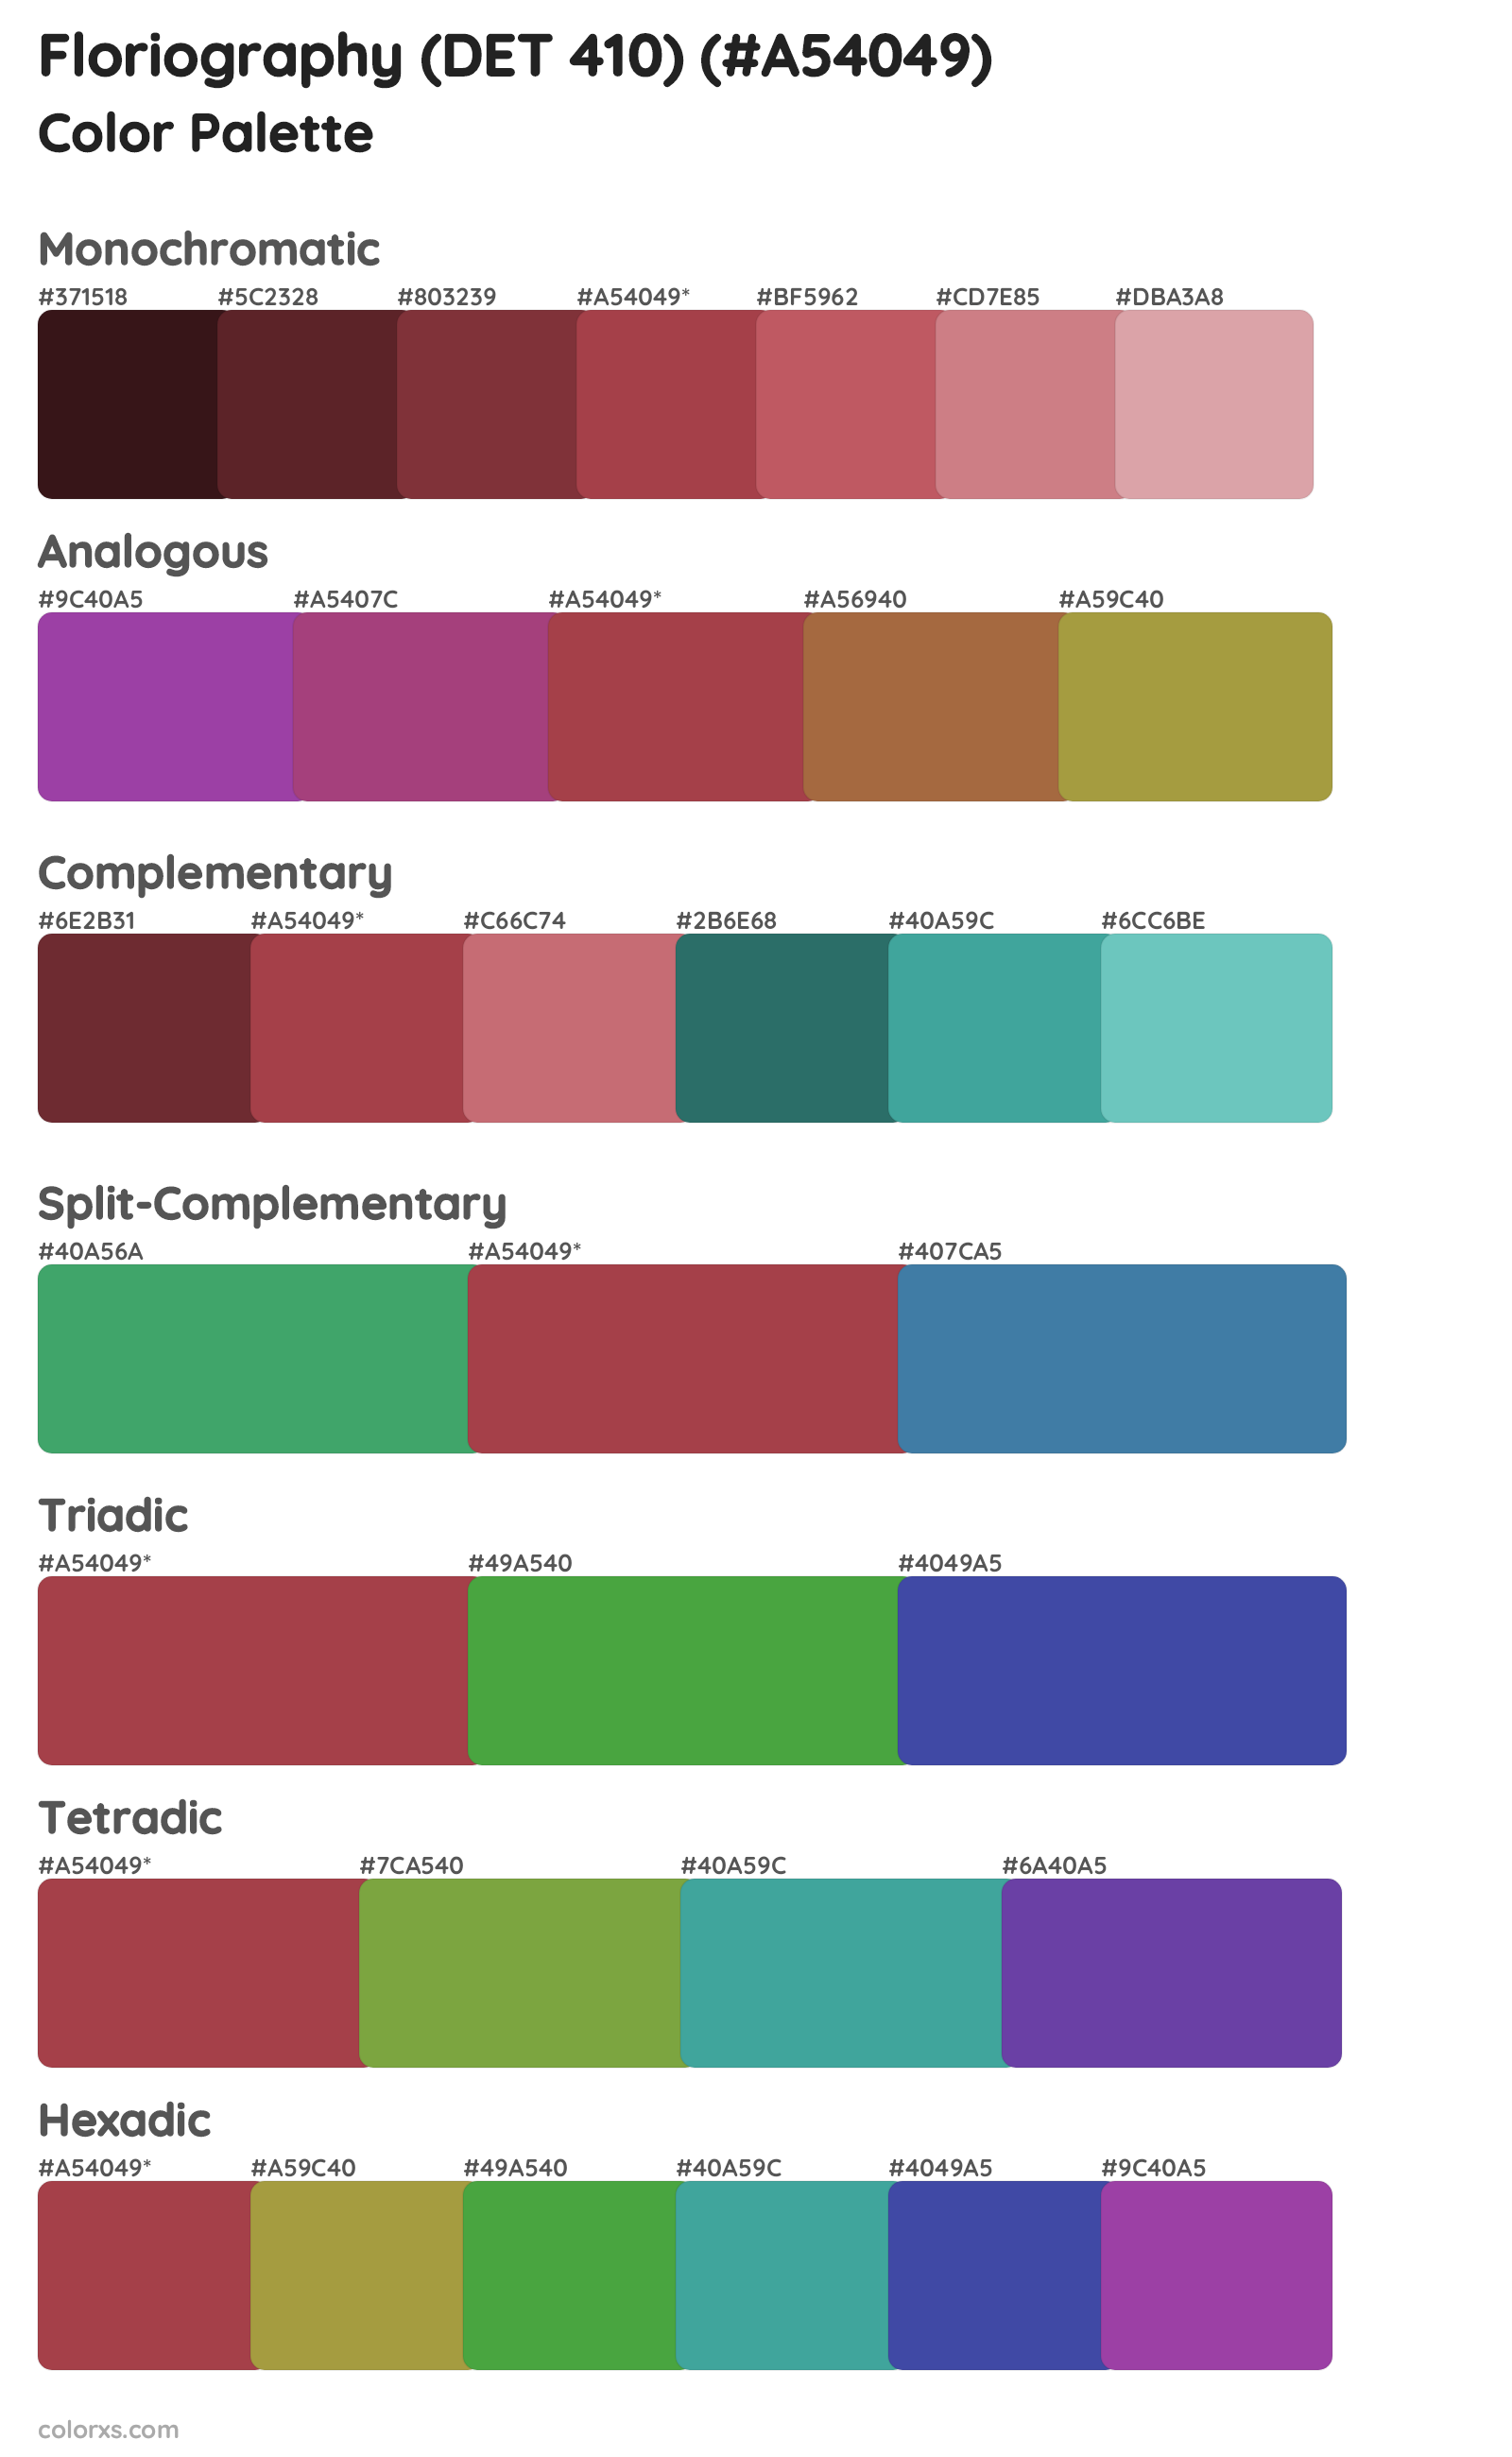 Floriography (DET 410) Color Scheme Palettes